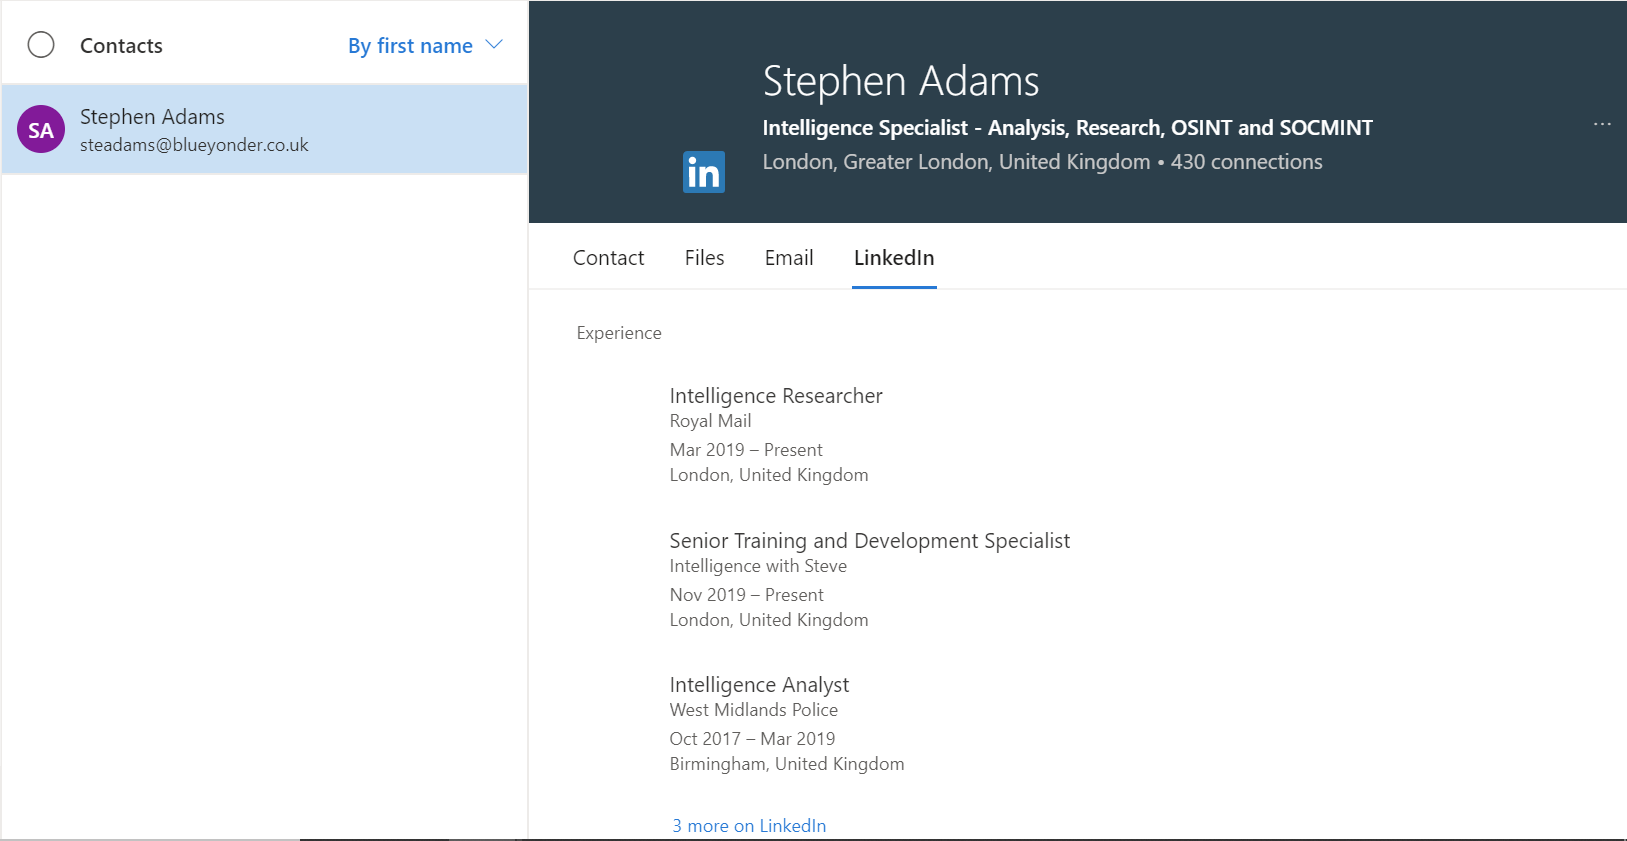 LinkedIn profile details in outlook. Credit - Steve Adams